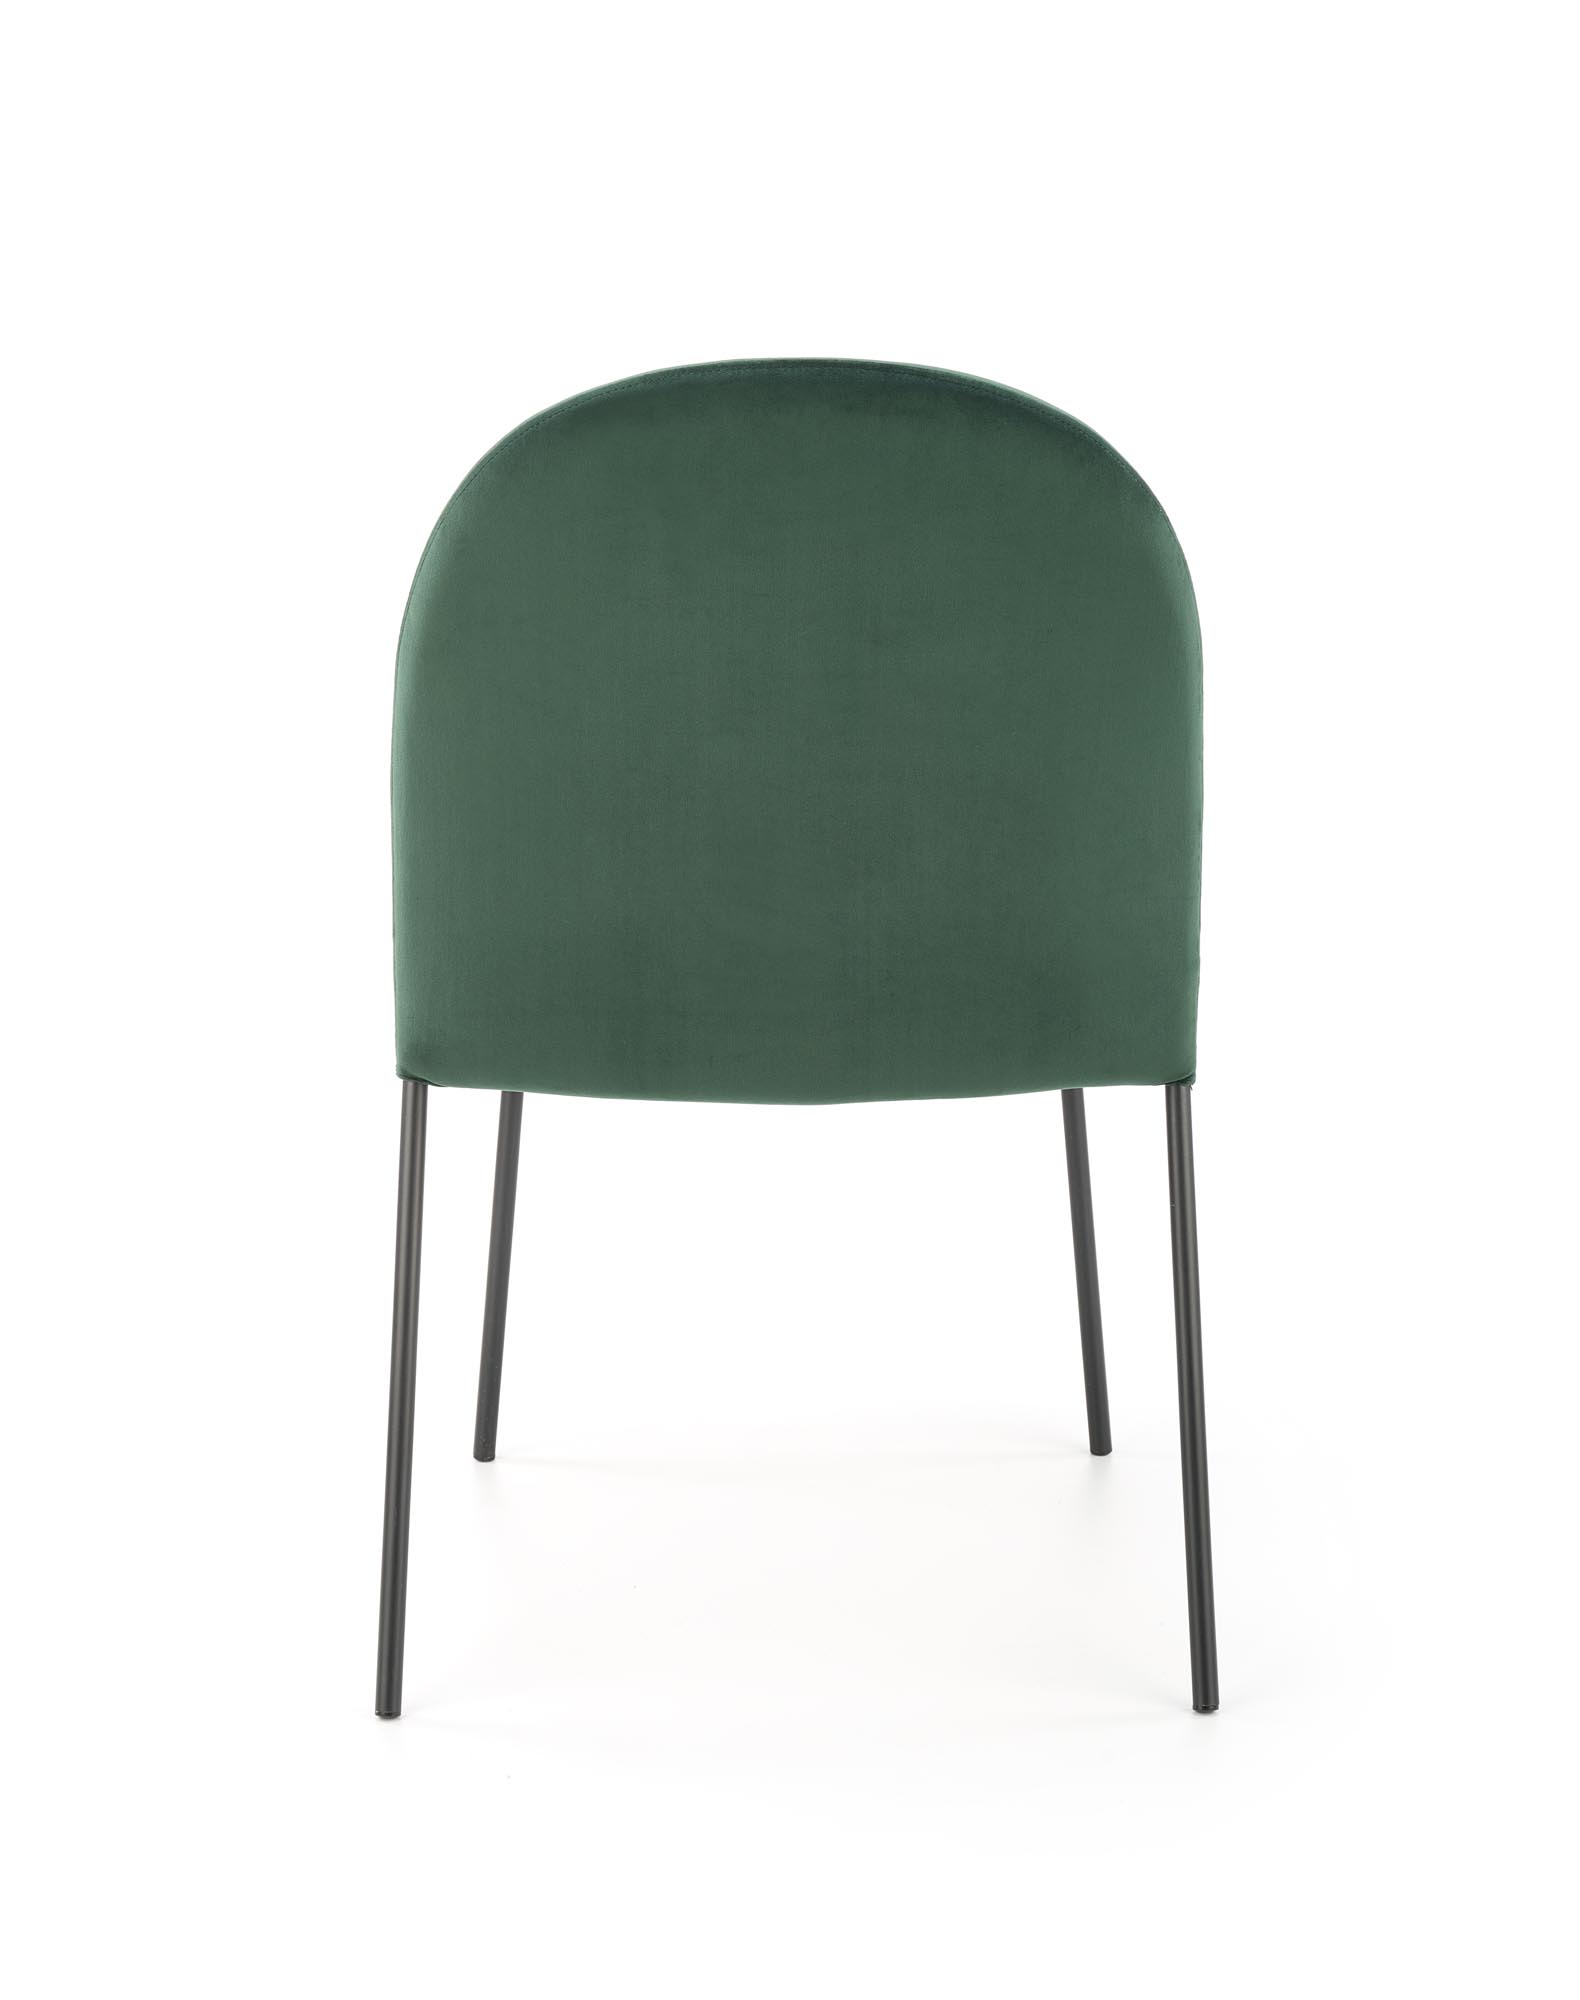 K443 stolica, boja: tamno zelena